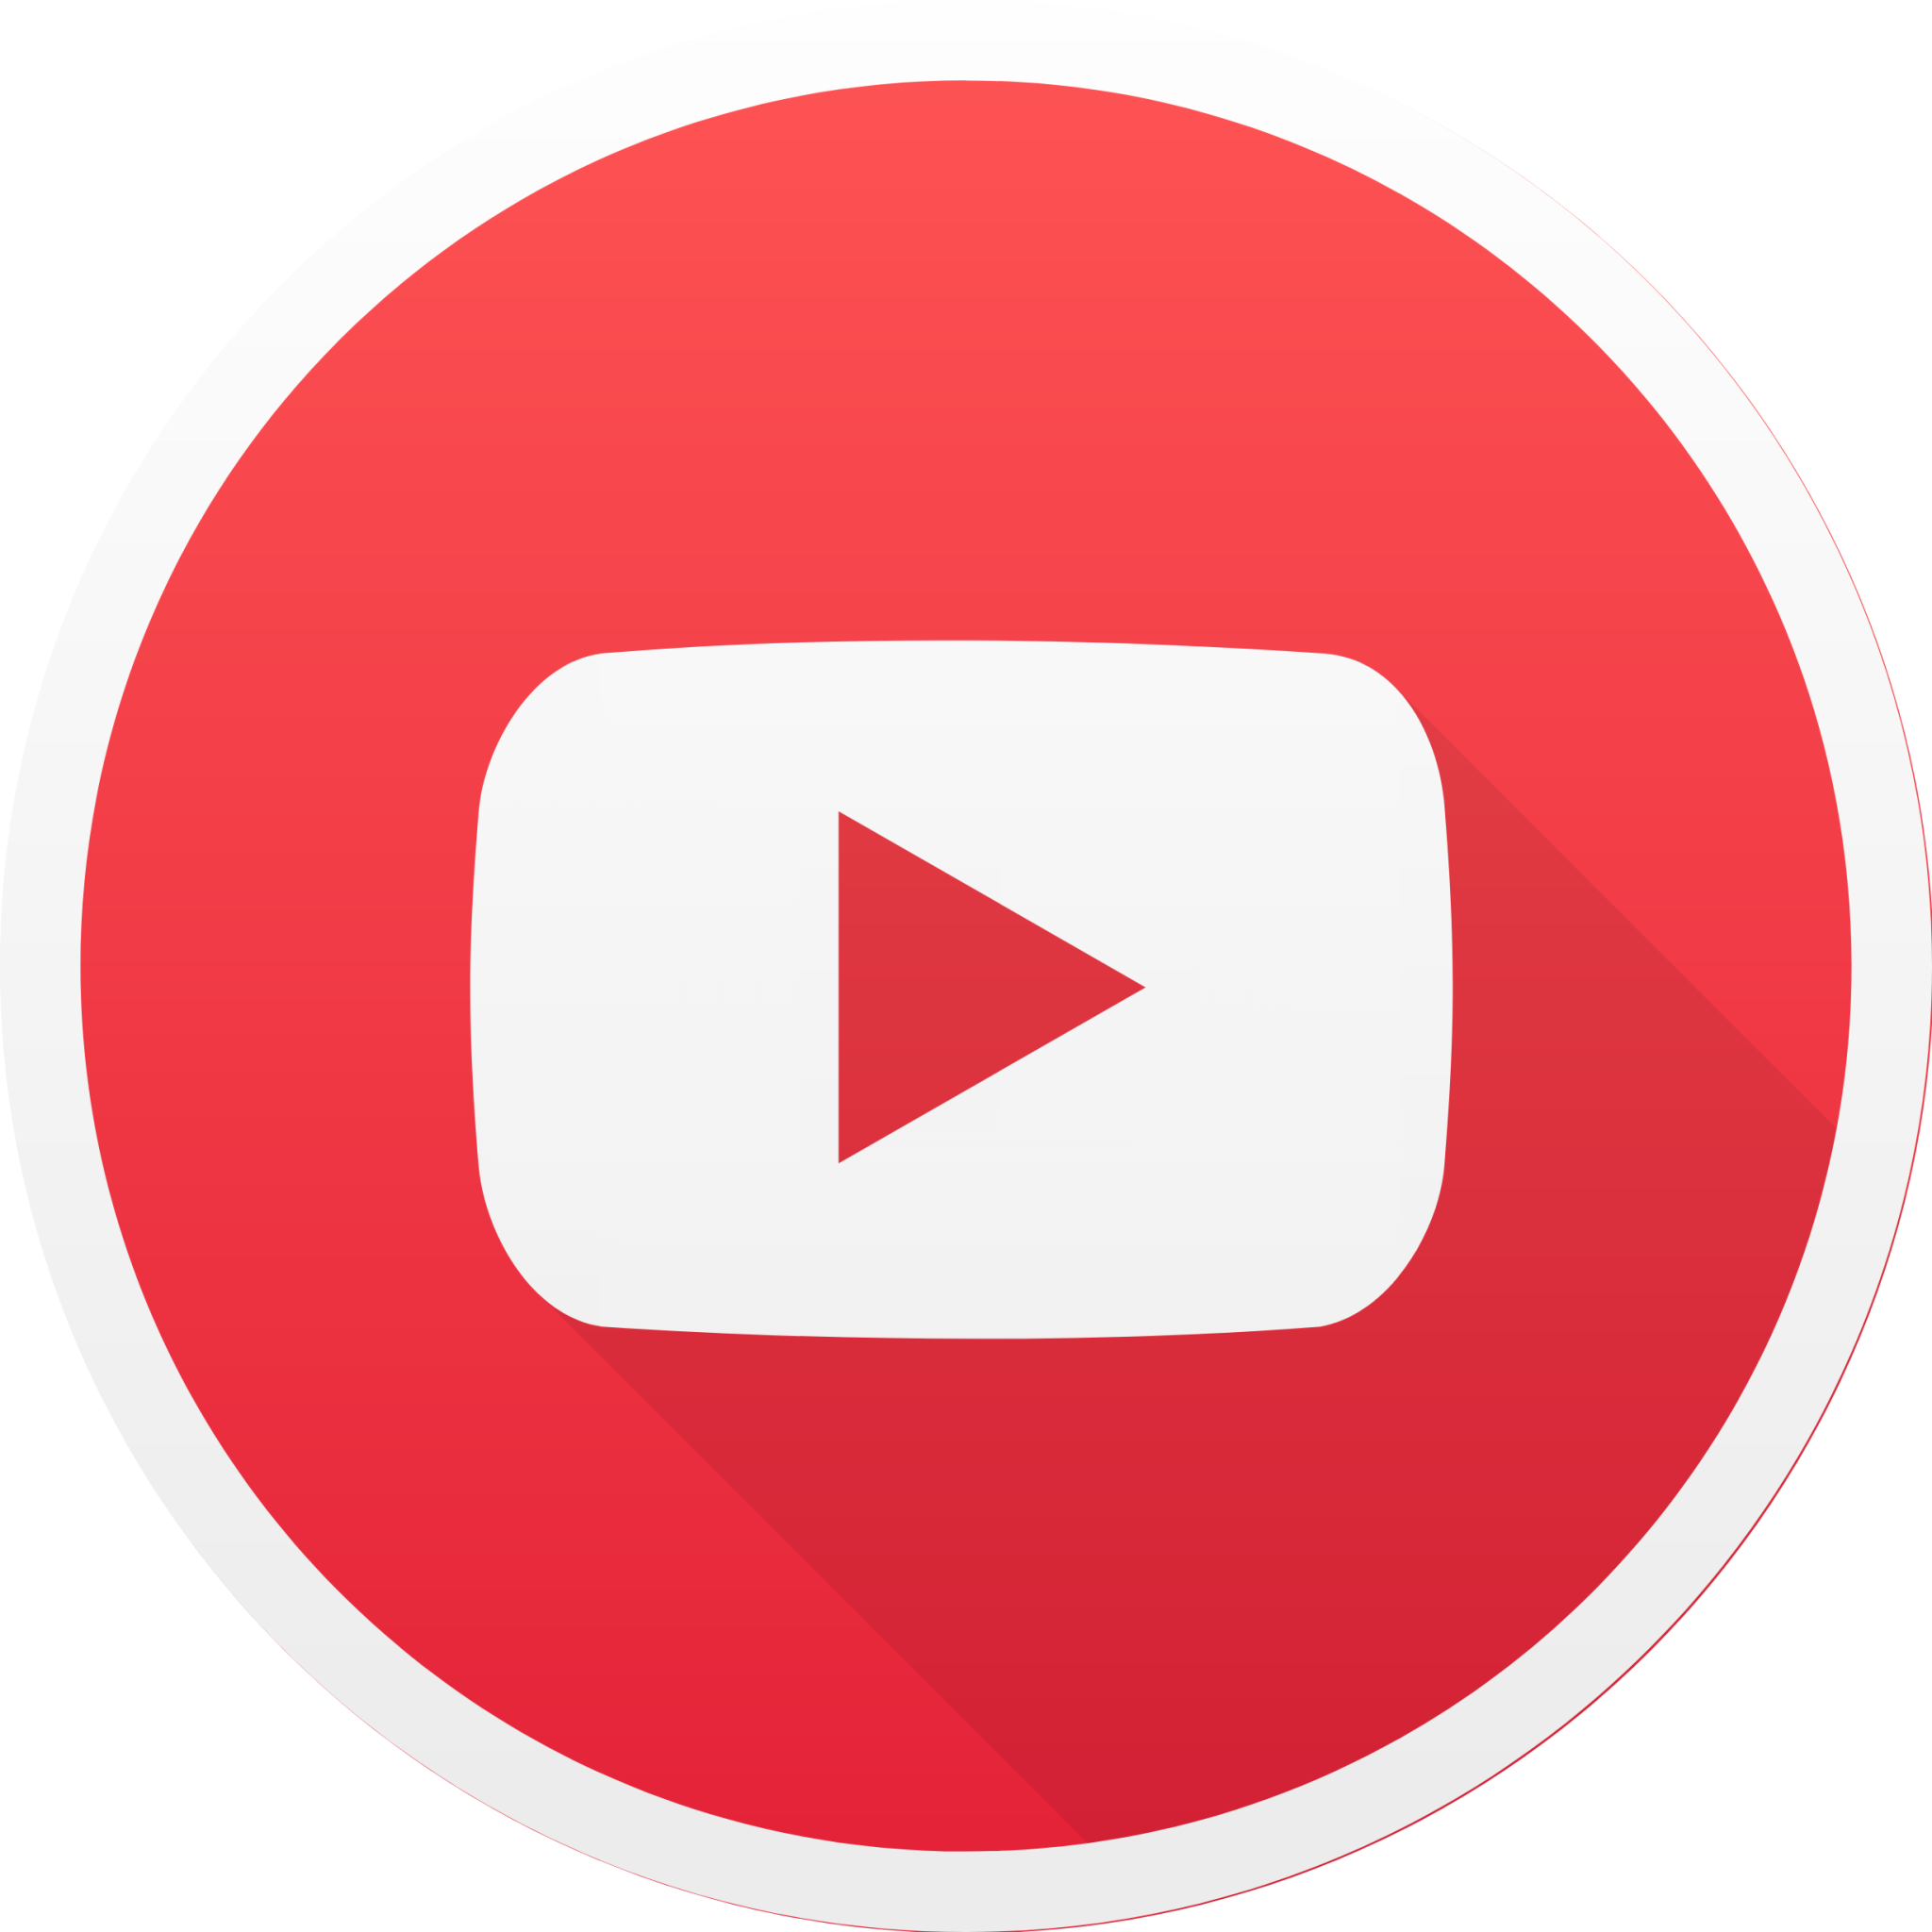 youtube circle icon